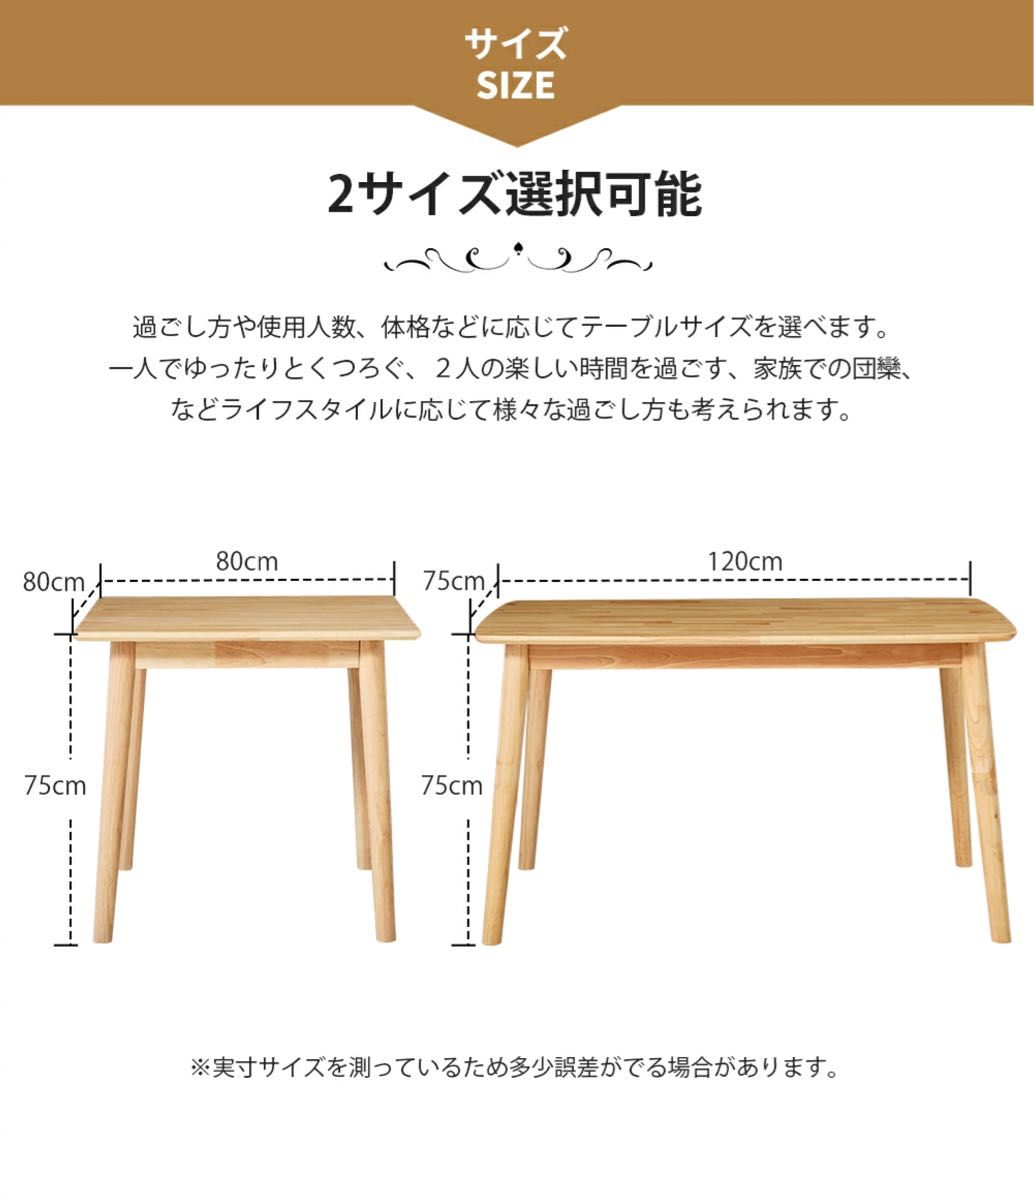 07 ダイニングテーブル オック無垢 木製 カフェテーブル 2人 4人掛け 高め